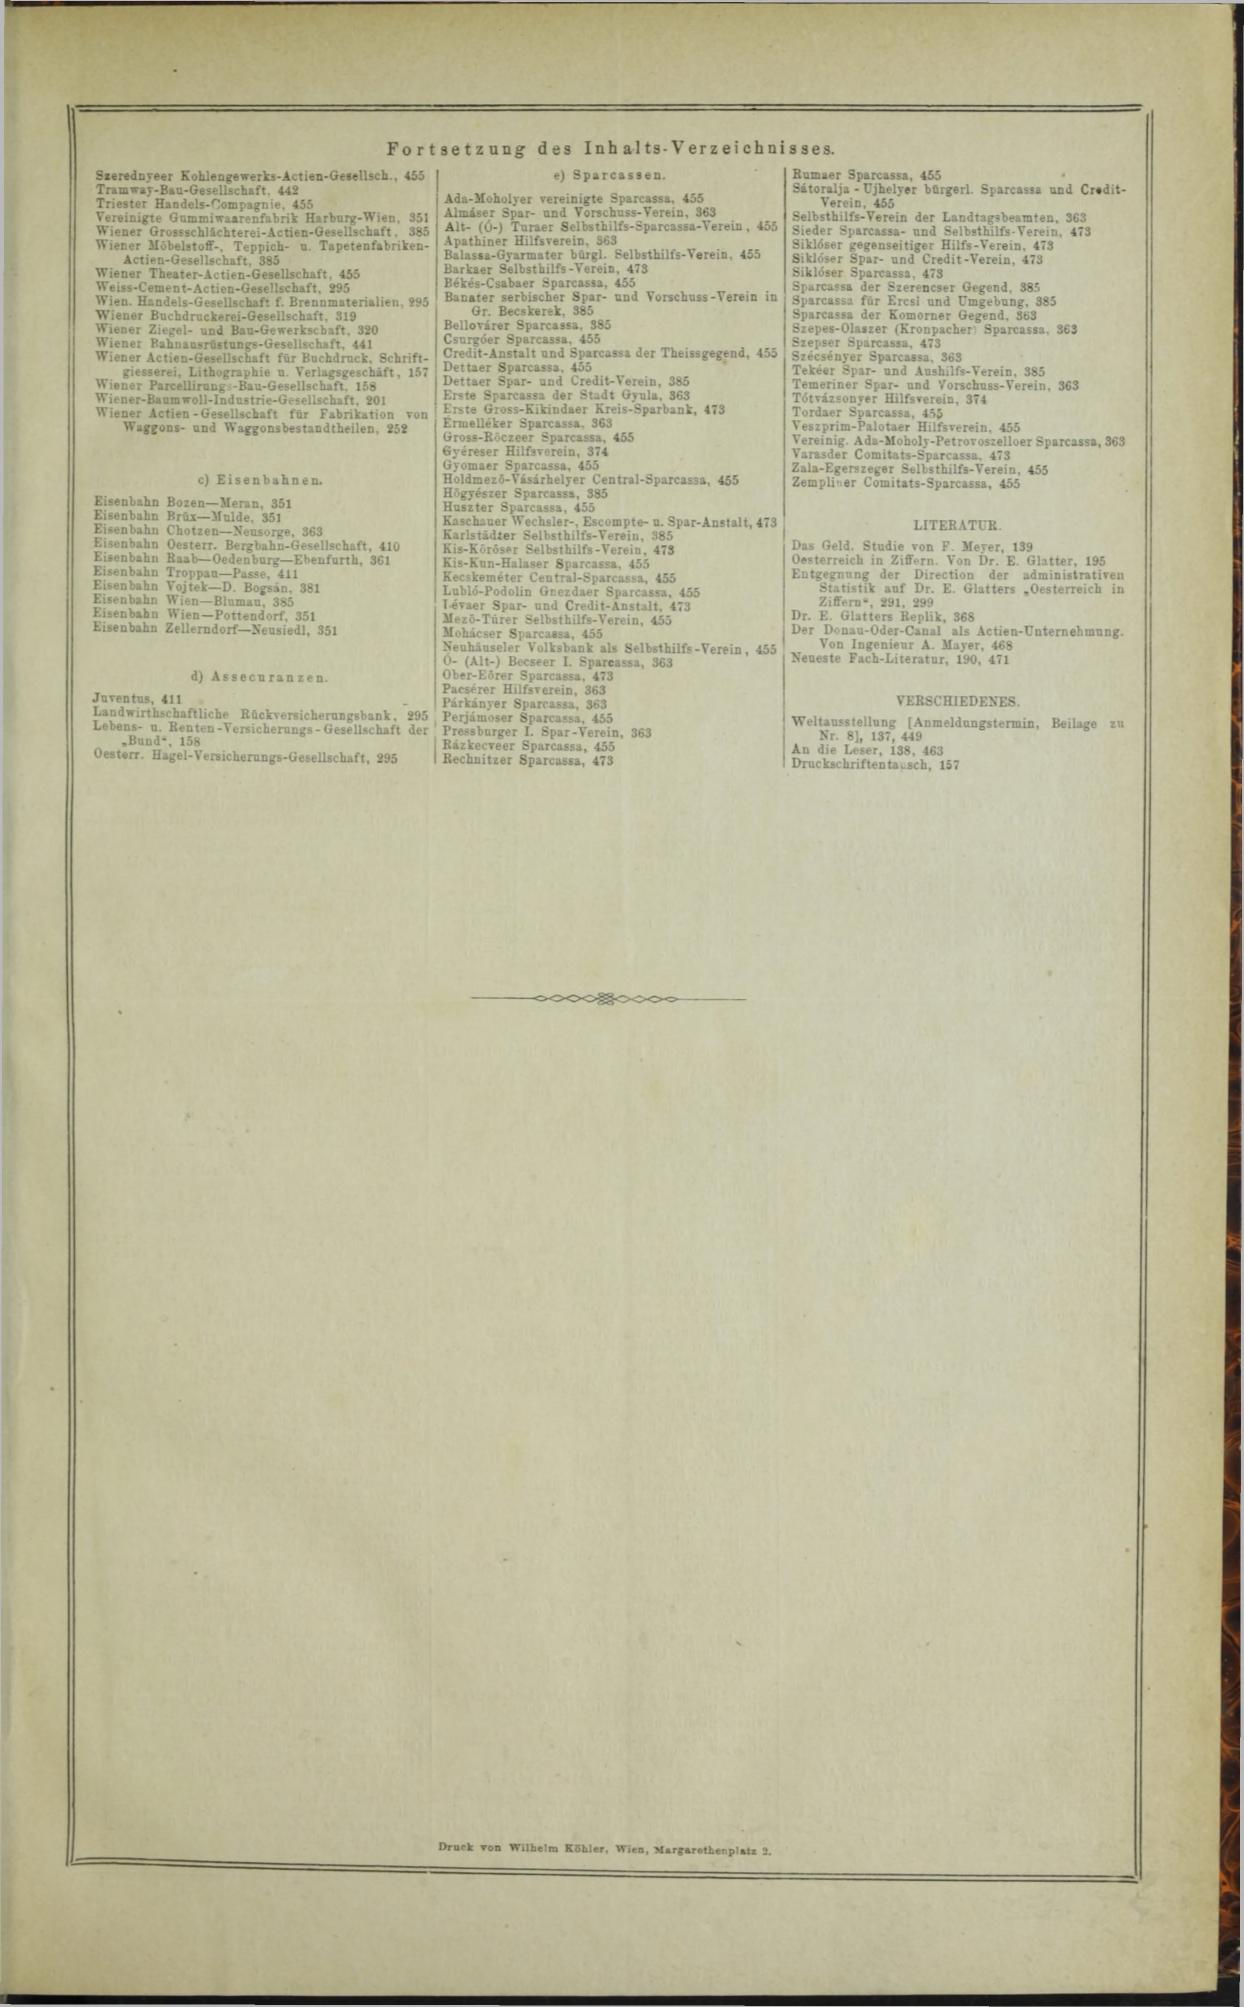 Der Tresor 28.08.1872 - Seite 14